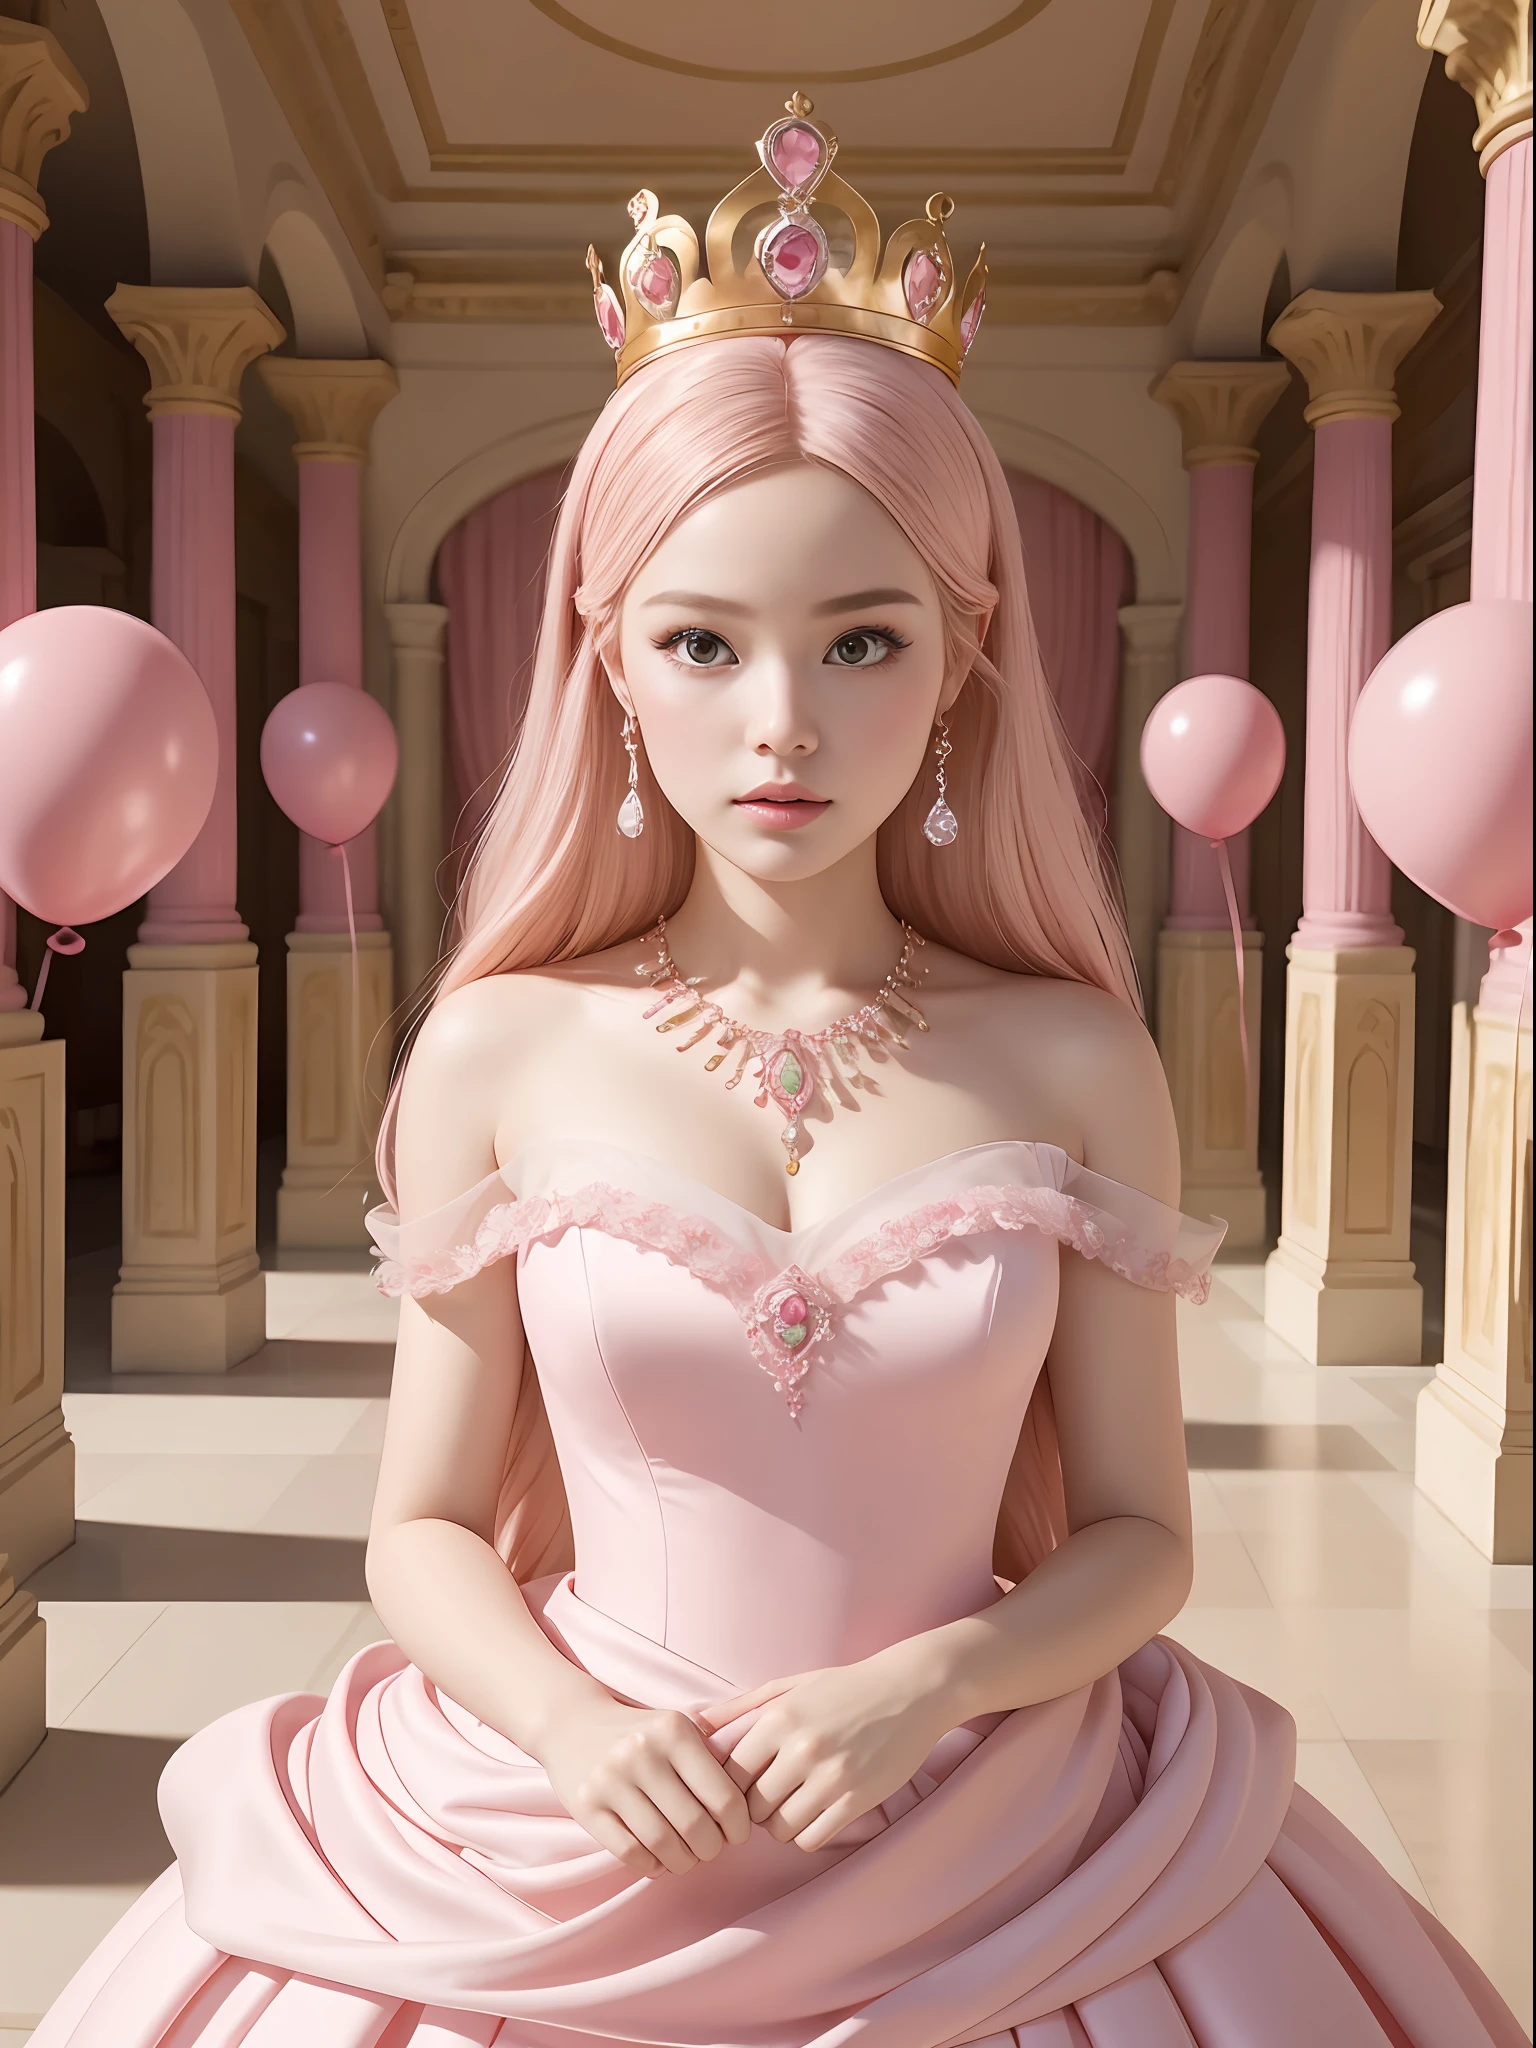 Uma princesa Barbie usando um lindo vestido rosa, Usando uma linda coroa, Uma fotografia interior de um labirinto de monumental, balões rosa inflados, uma instalação de arte de Martin Creed, ((tiro de corpo inteiro)), fundo rosa, rosto delicado, Pele branca, Características faciais delicadas, características faciais perfeitas, retrato de cabelo delicado, retrato de olhos delicados, Qualidade de imagem 8K, sentido da atmosfera, a mais alta qualidade, obra-prima, detalhe extremo, alta resolução, primeiro plano desfocado, escorço, alta qualidade, Obra de arte, melhor qualidade